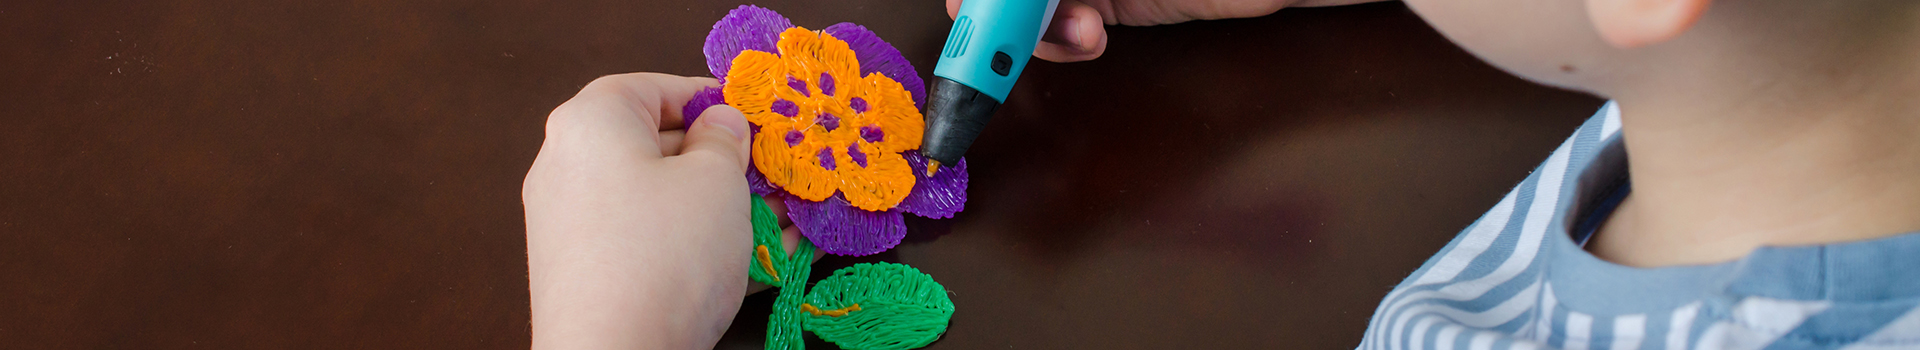 Berniukas naudoja 3D rašiklį.Laimingas vaikas gamina gėlę iš spalvoto ABS plastiko.